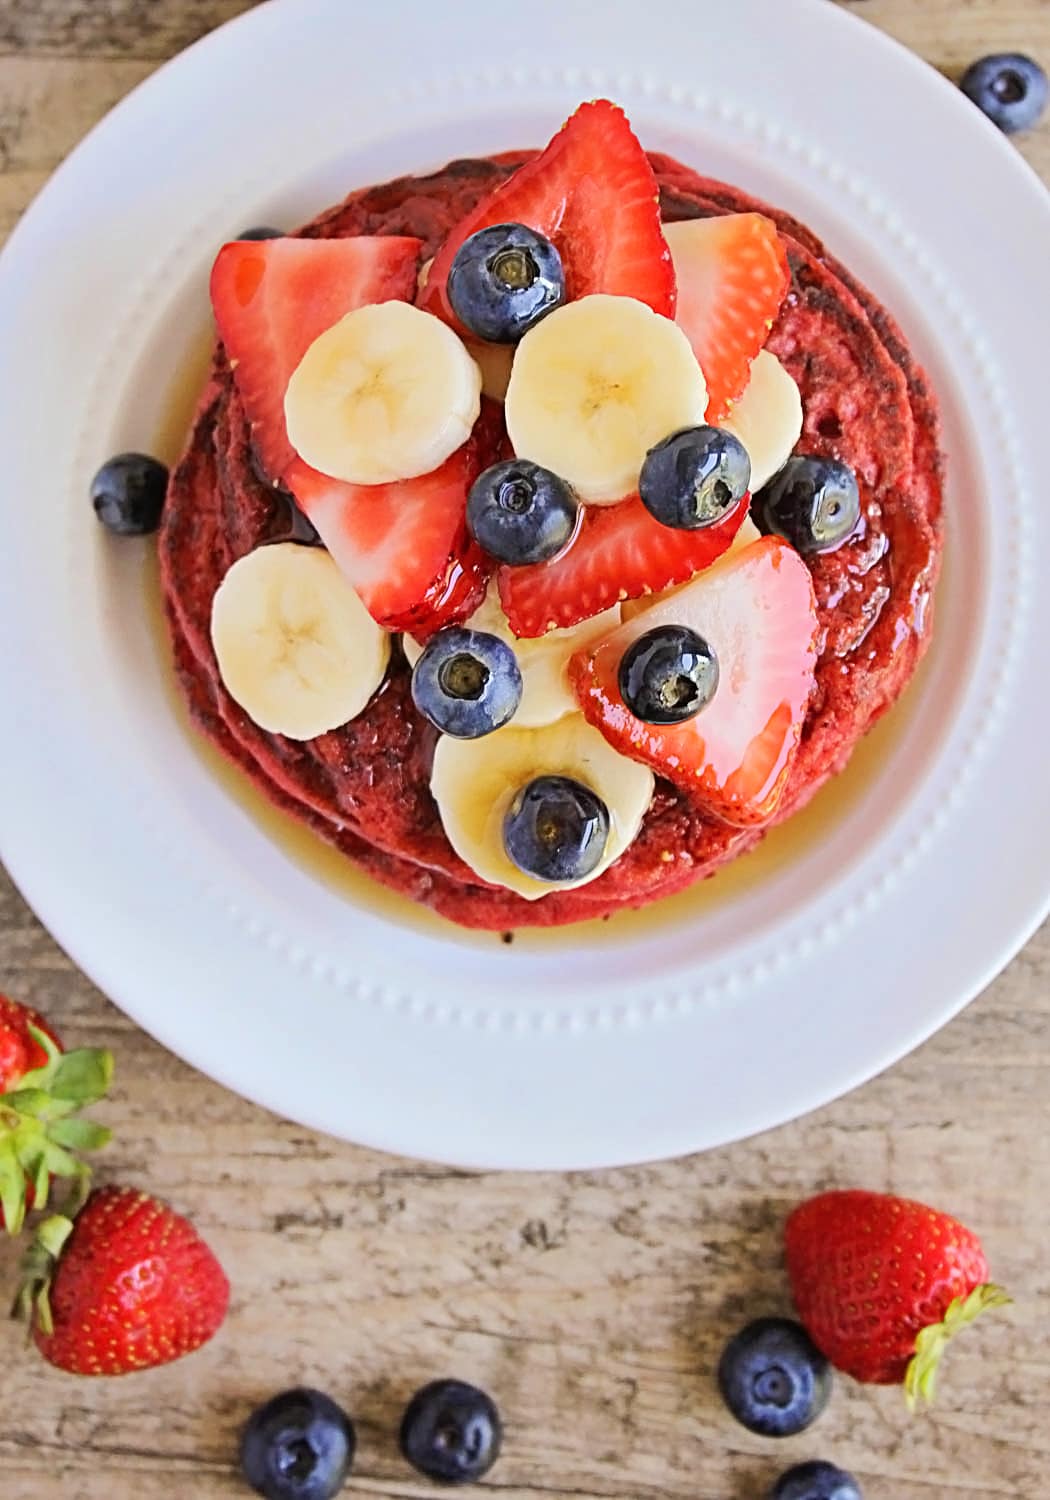 How to Make Red Velvet Pancakes